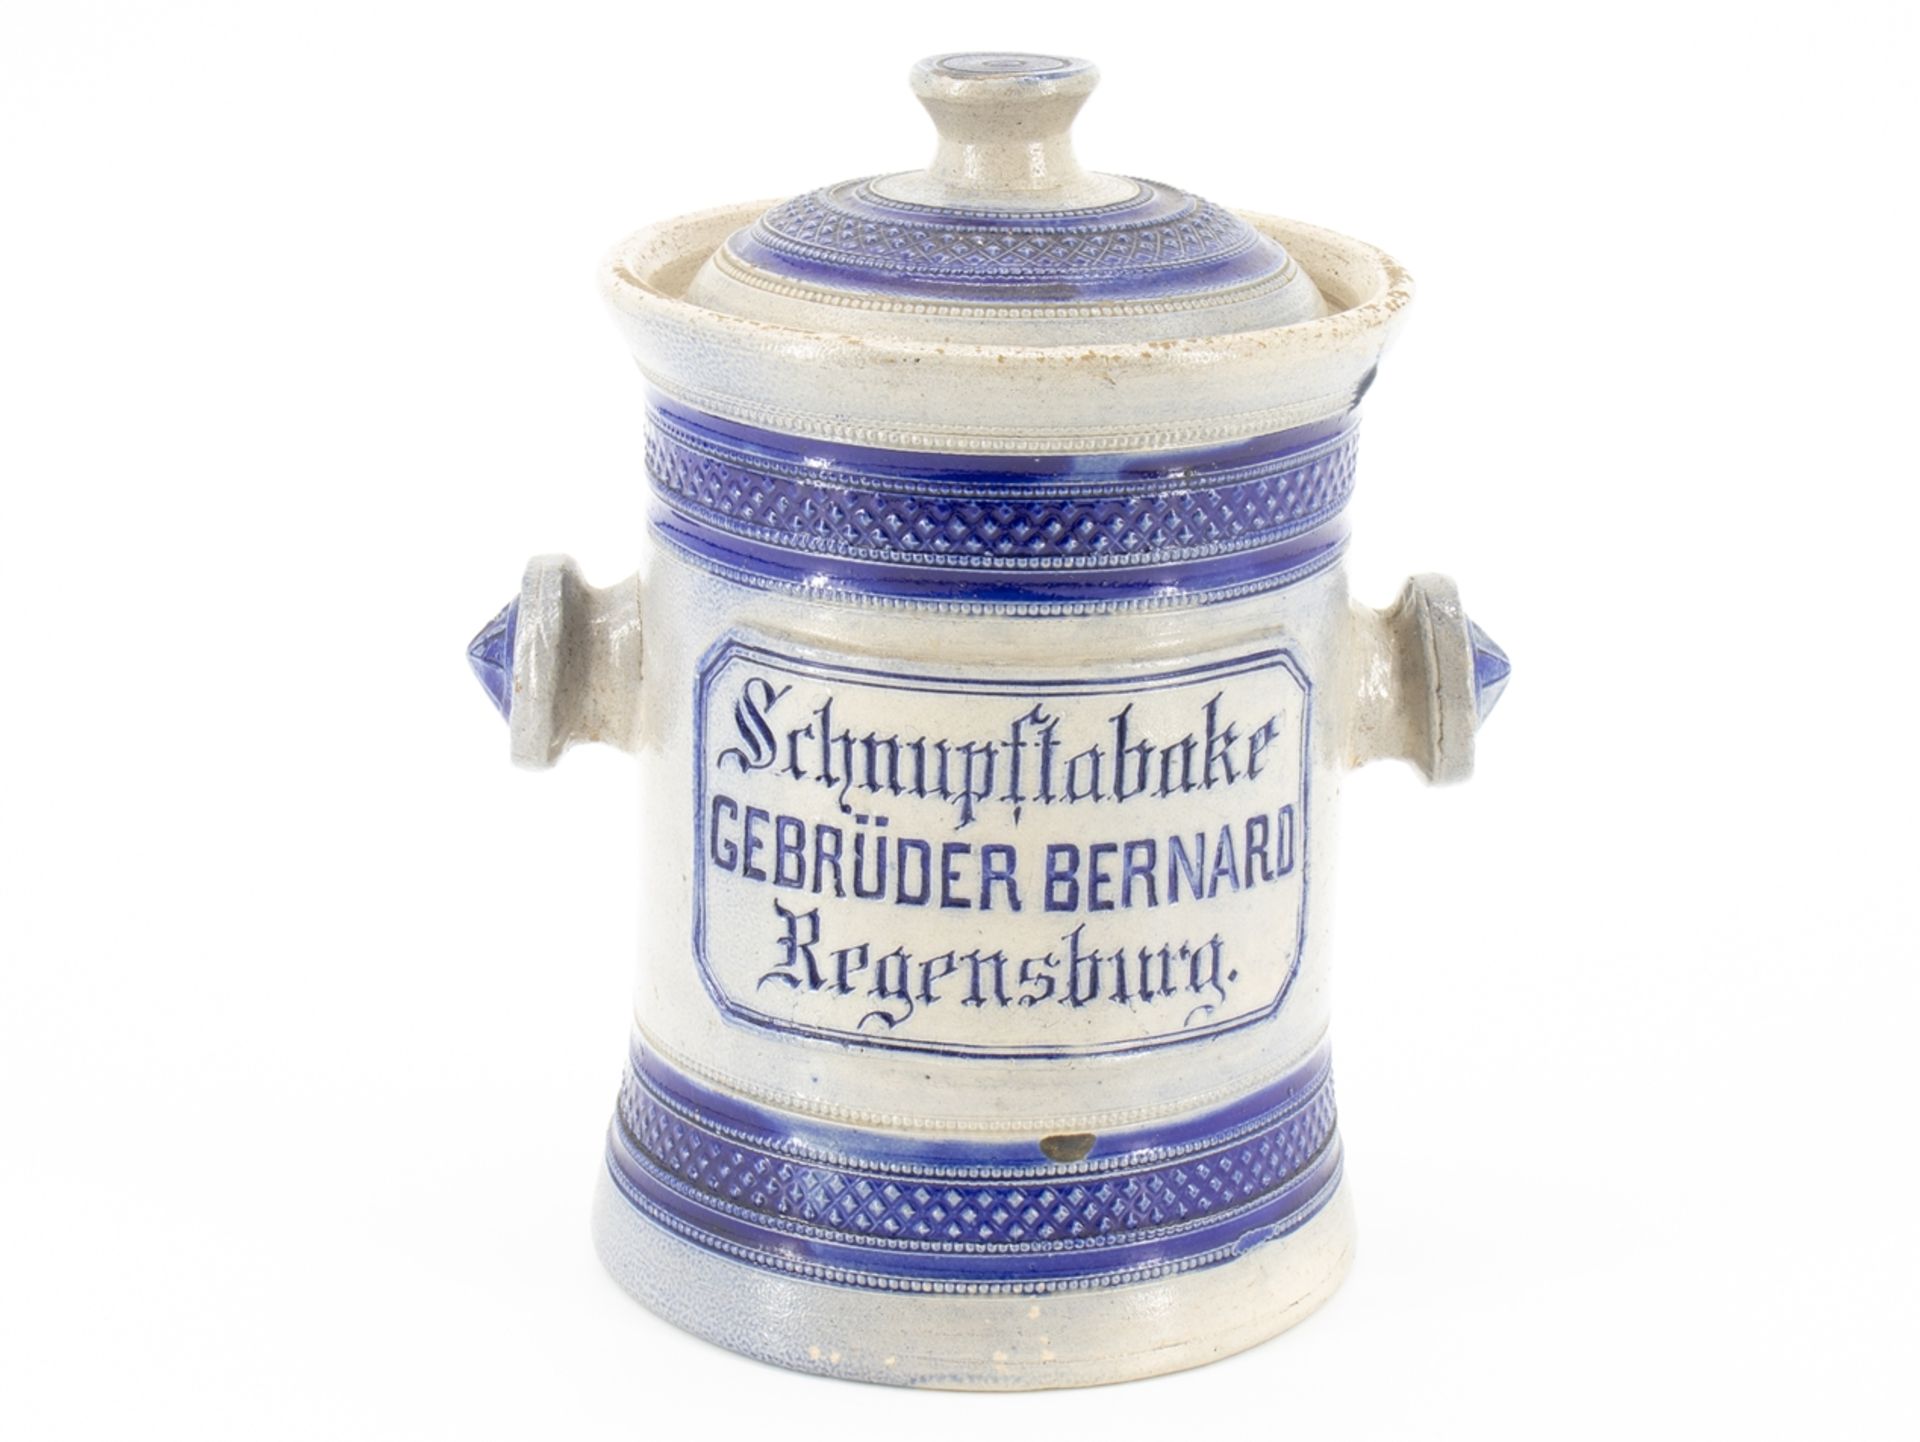 Snuff pot, Gebrüder Bernard, Regensburg, around 1900